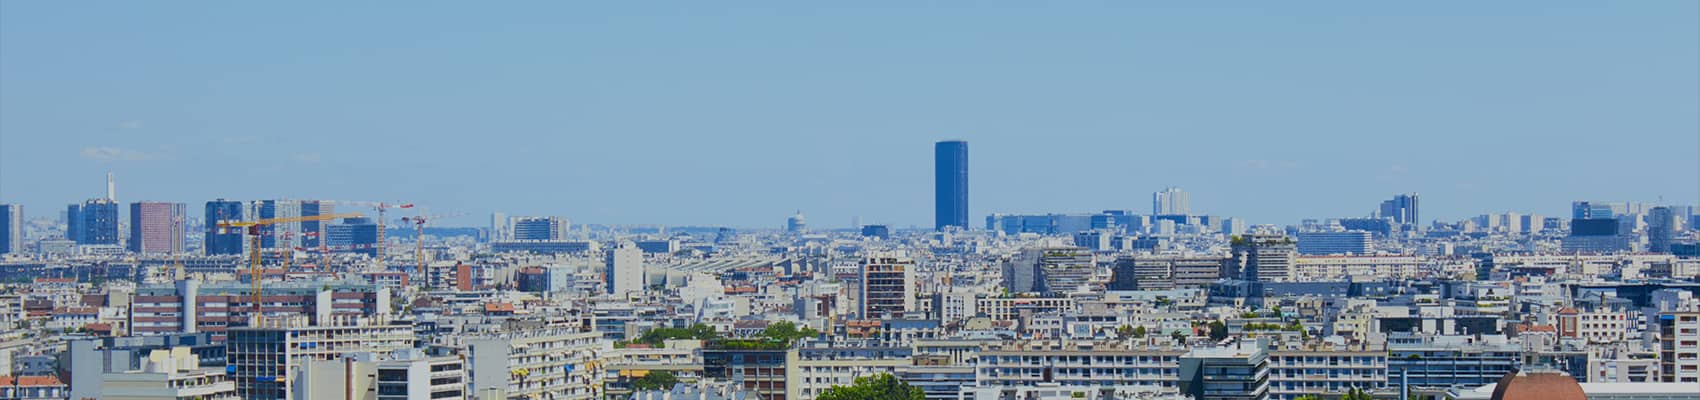 Vue de la ville de Paris avec des chantiers de construction